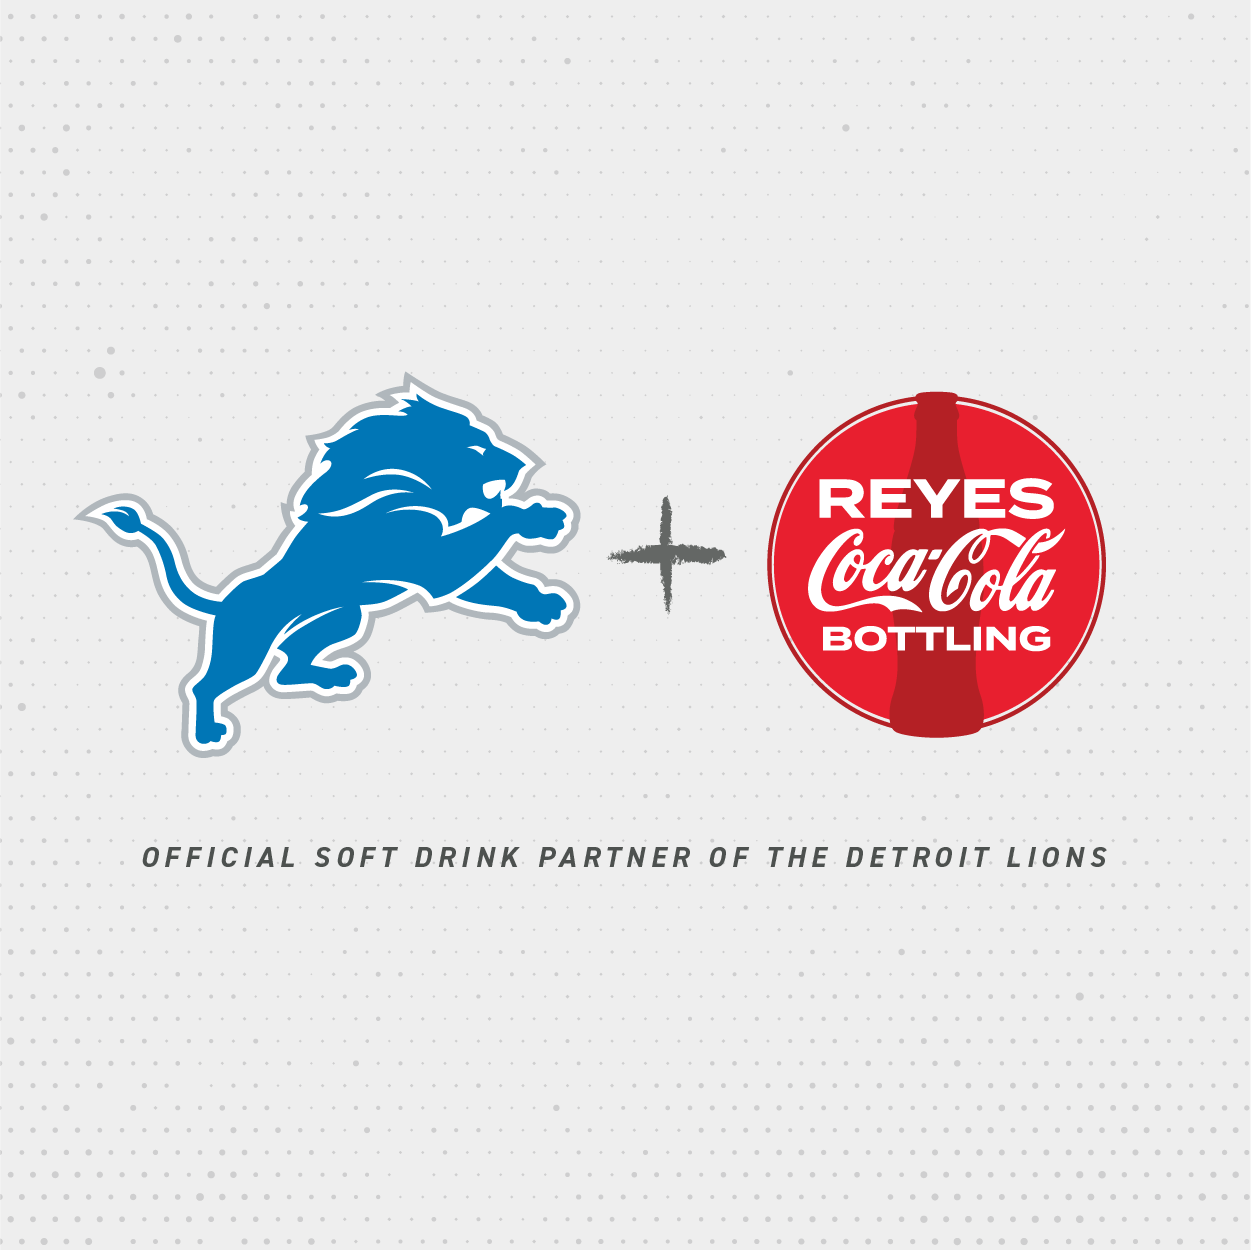 Detroit Lions and Reyes Coca-Cola Bottling logo